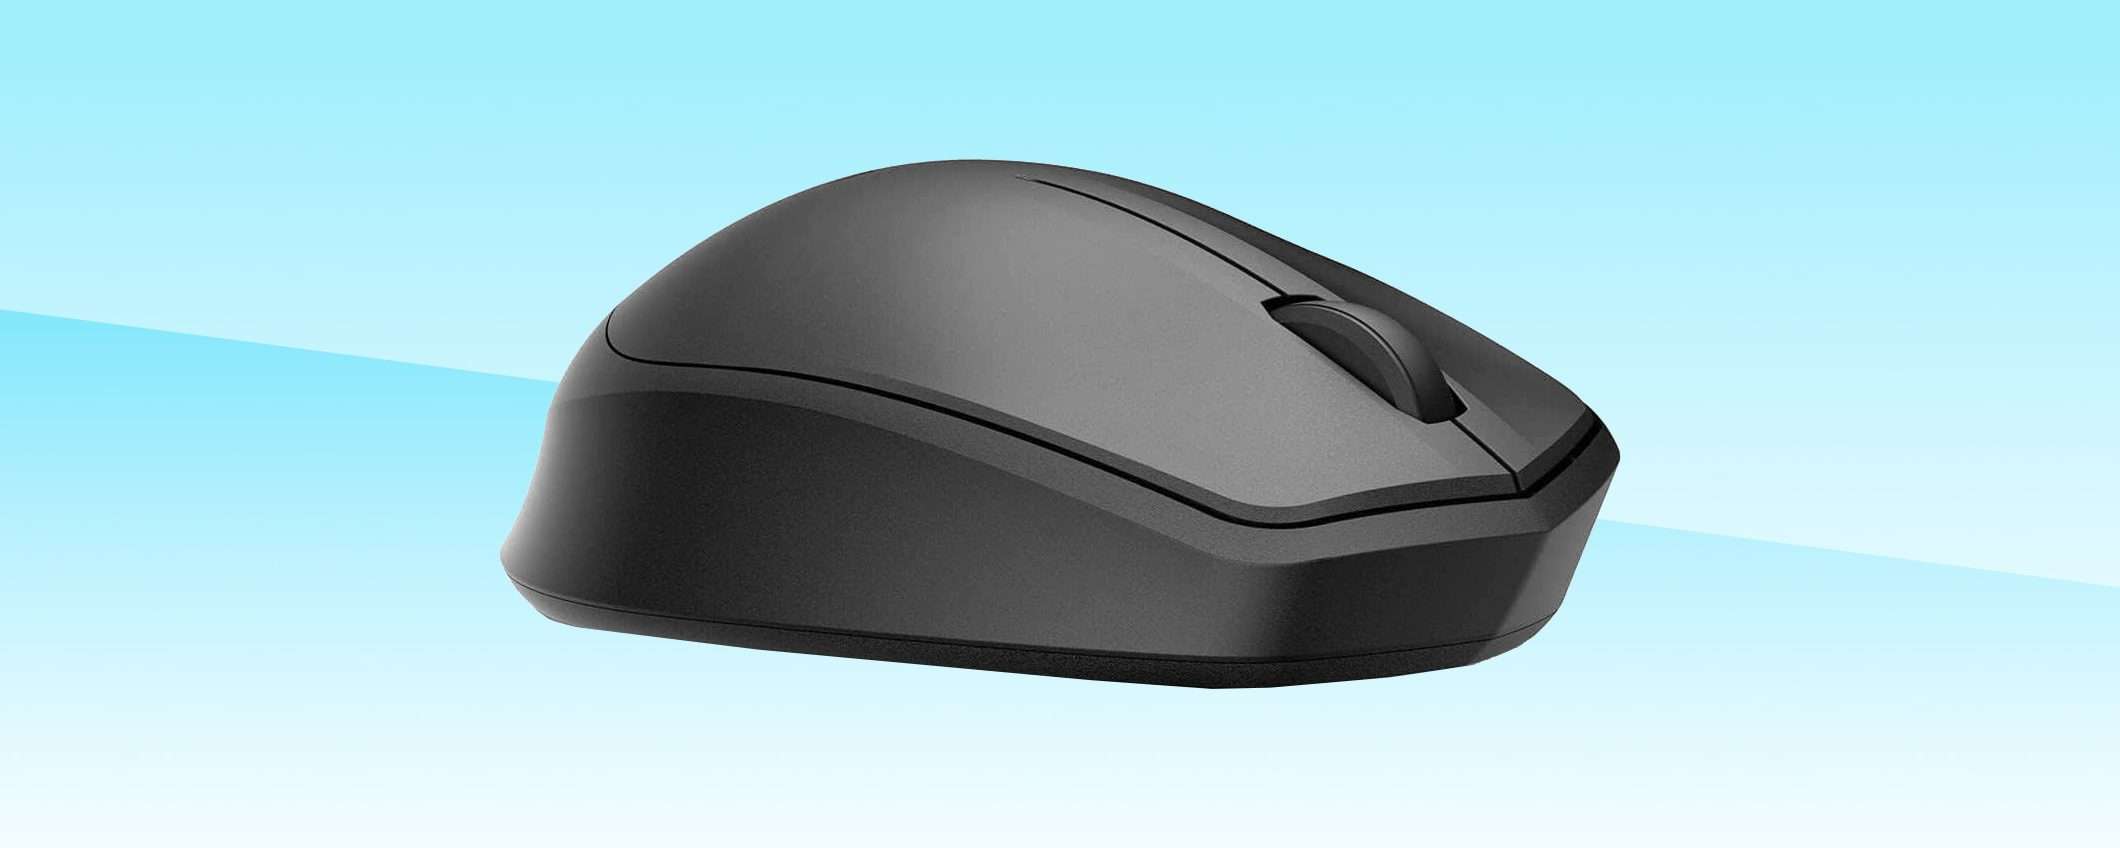 Mouse wireless HP 280M a meno di metà prezzo: fai click